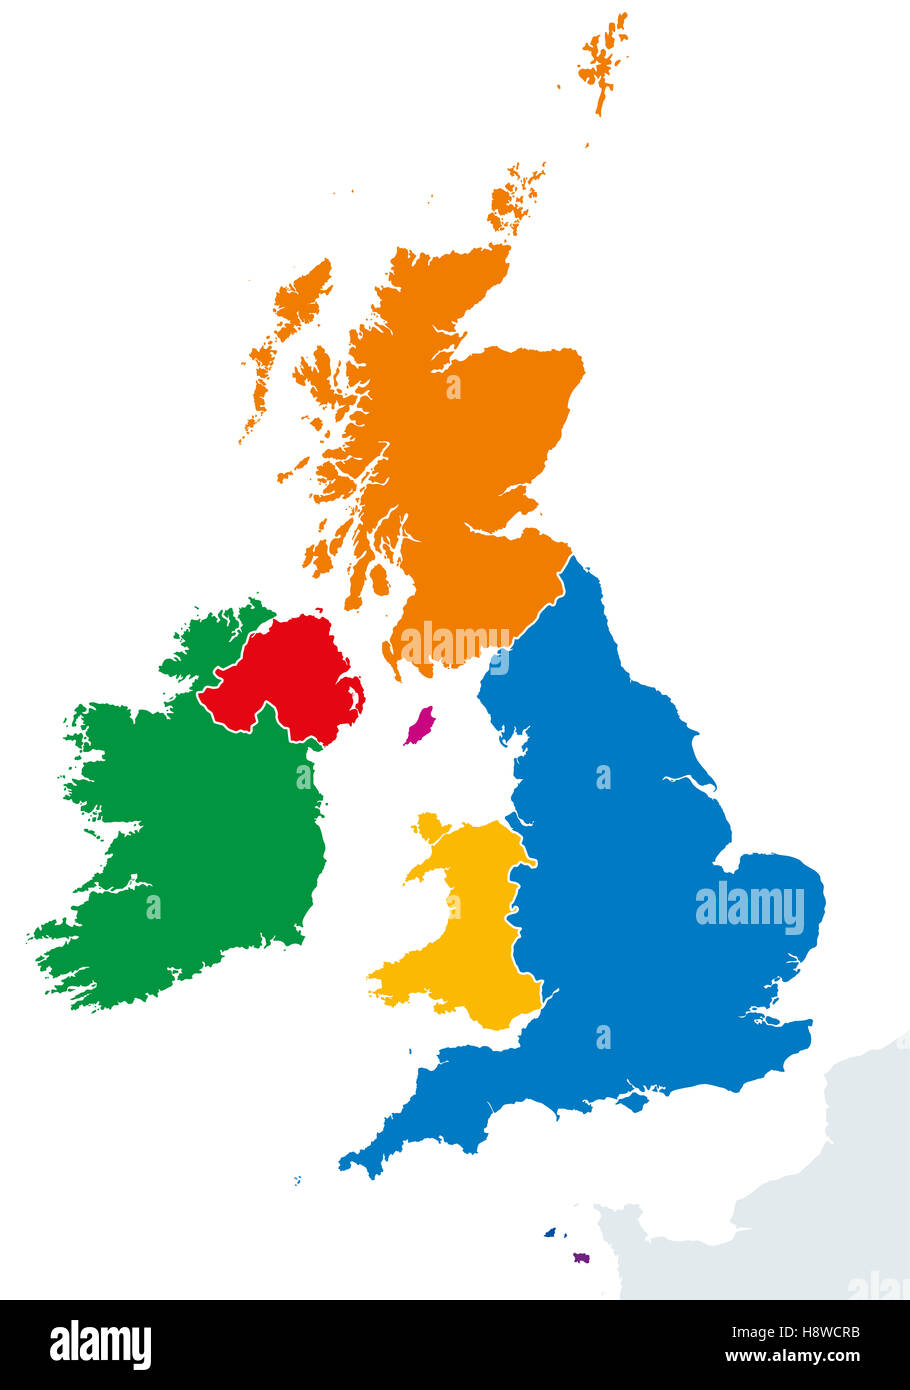 Britischen Inseln Länder Silhouetten Karte. Irland und Großbritannien Länder England, Schottland, Wales und Nordirland. Stockfoto